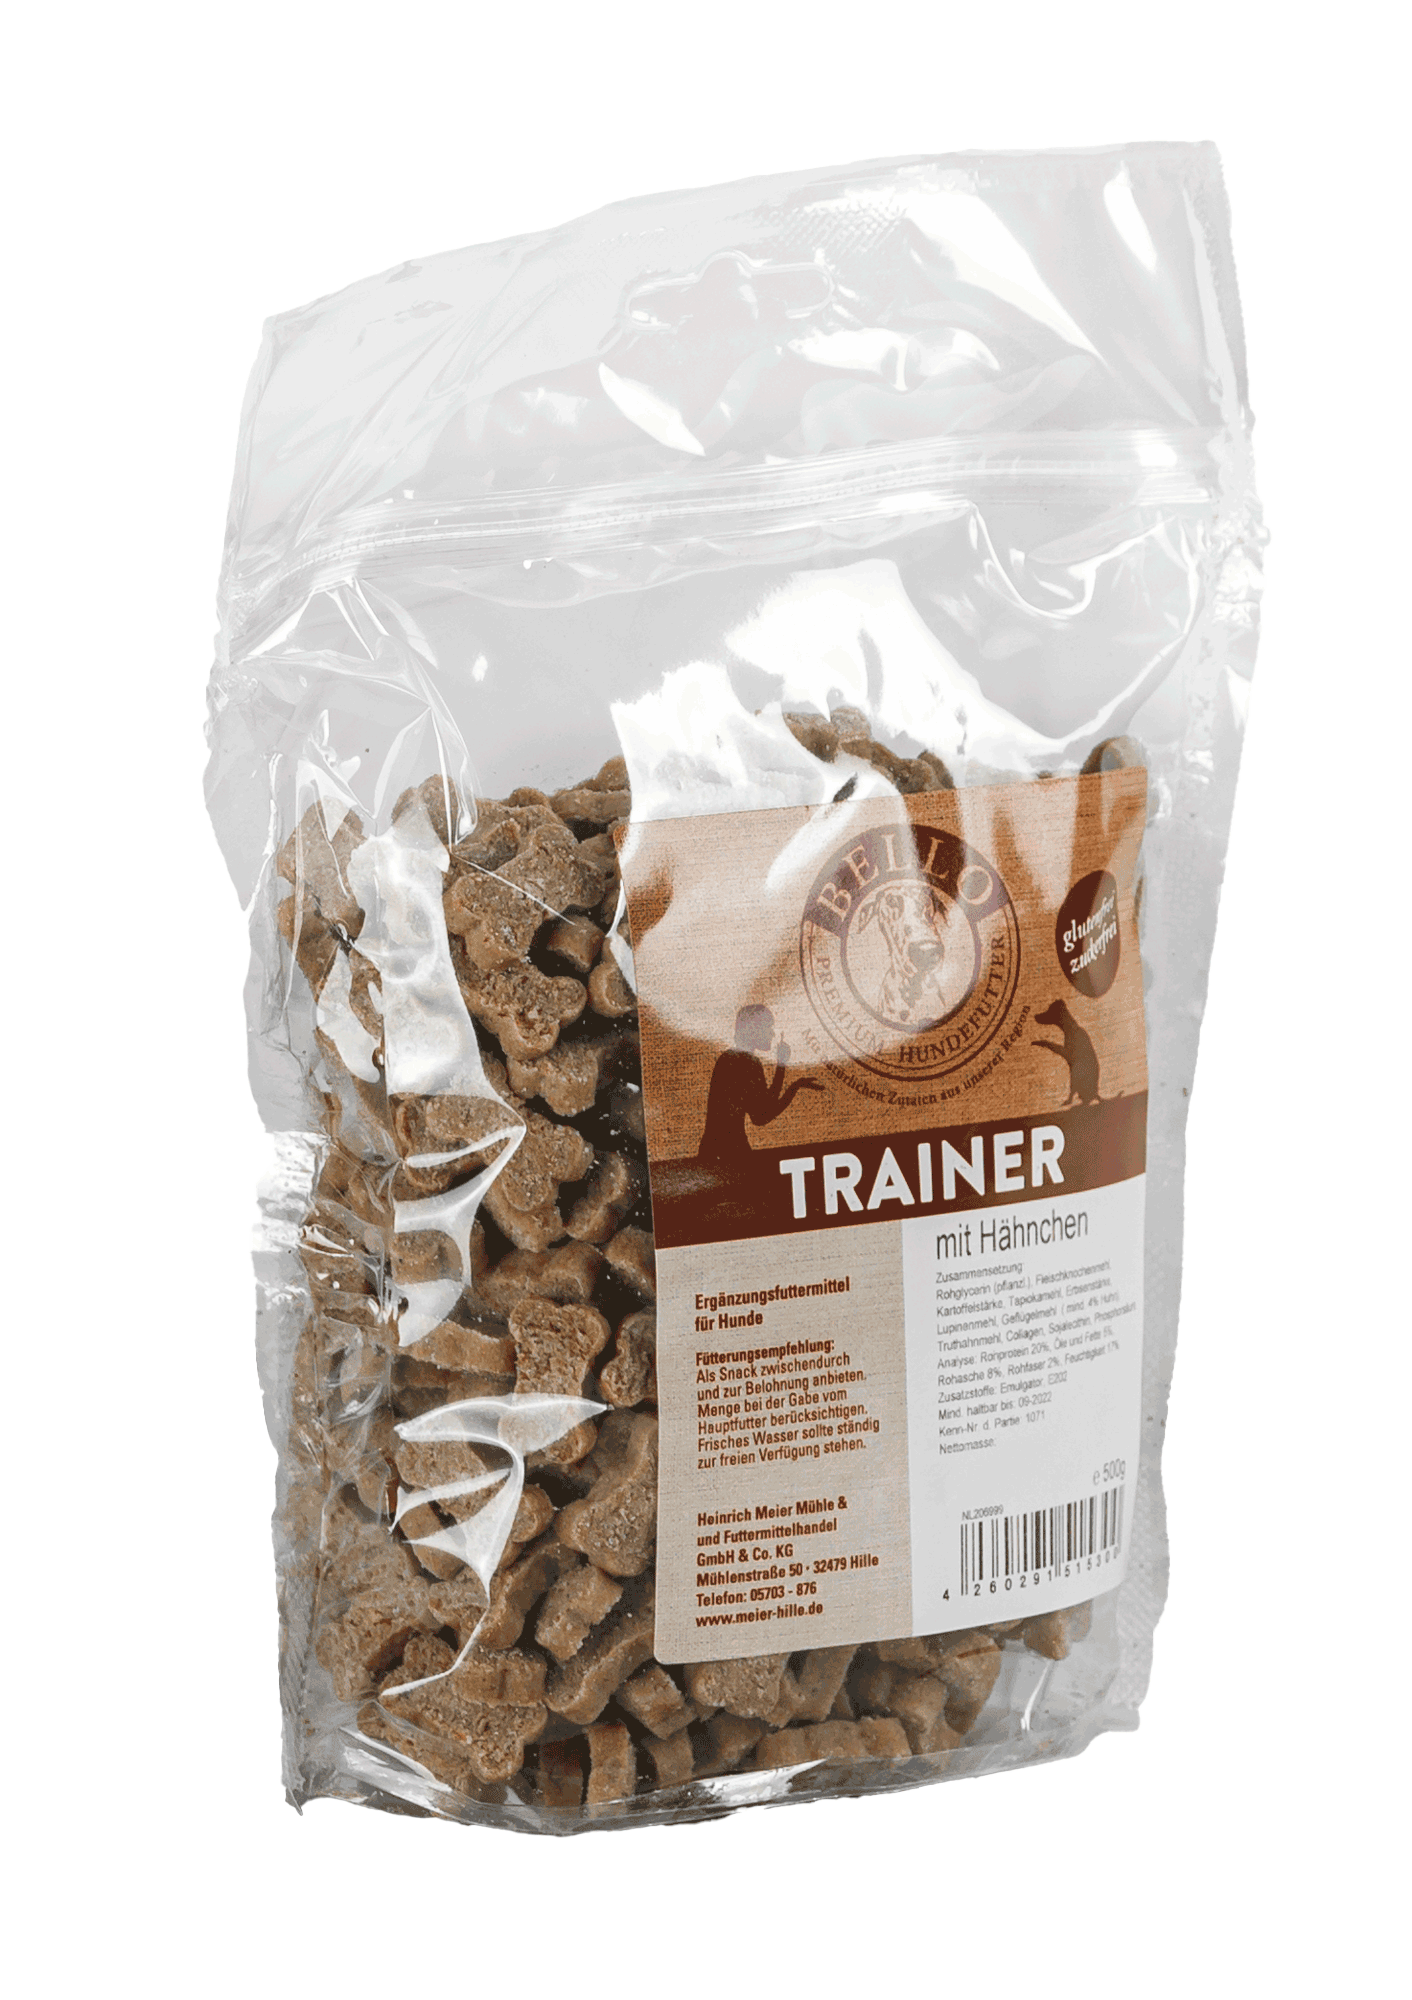 Transparenter Beutel mit Etikett und abgefüllt mit Hunde trainer snacks